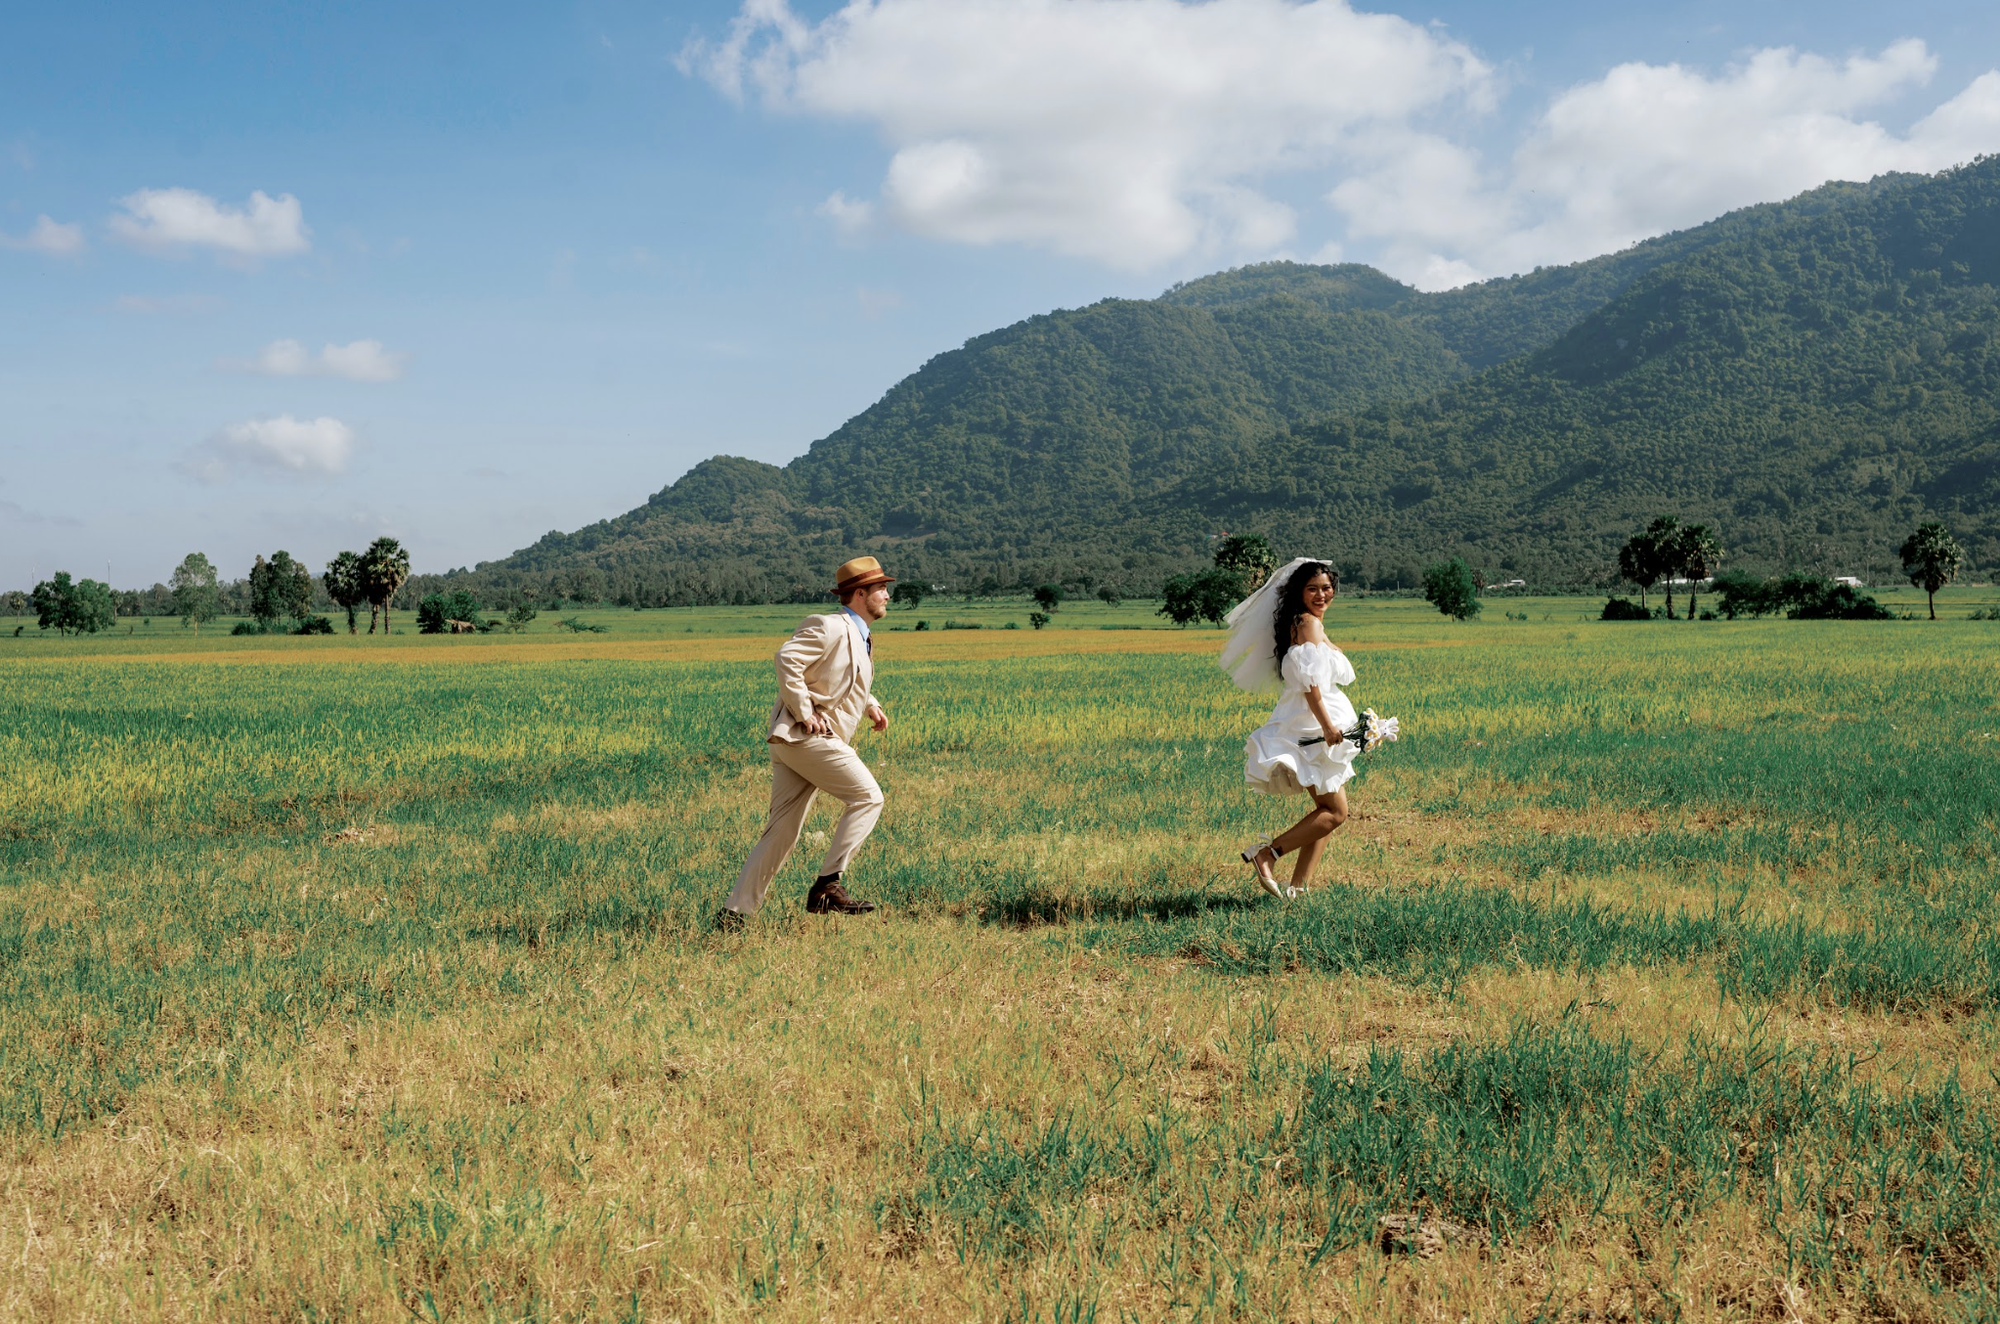 Dễ thương bộ ảnh chàng trai Mỹ chụp cùng cô gái Việt giữa đồng lúa miền Tây - Ảnh 2.